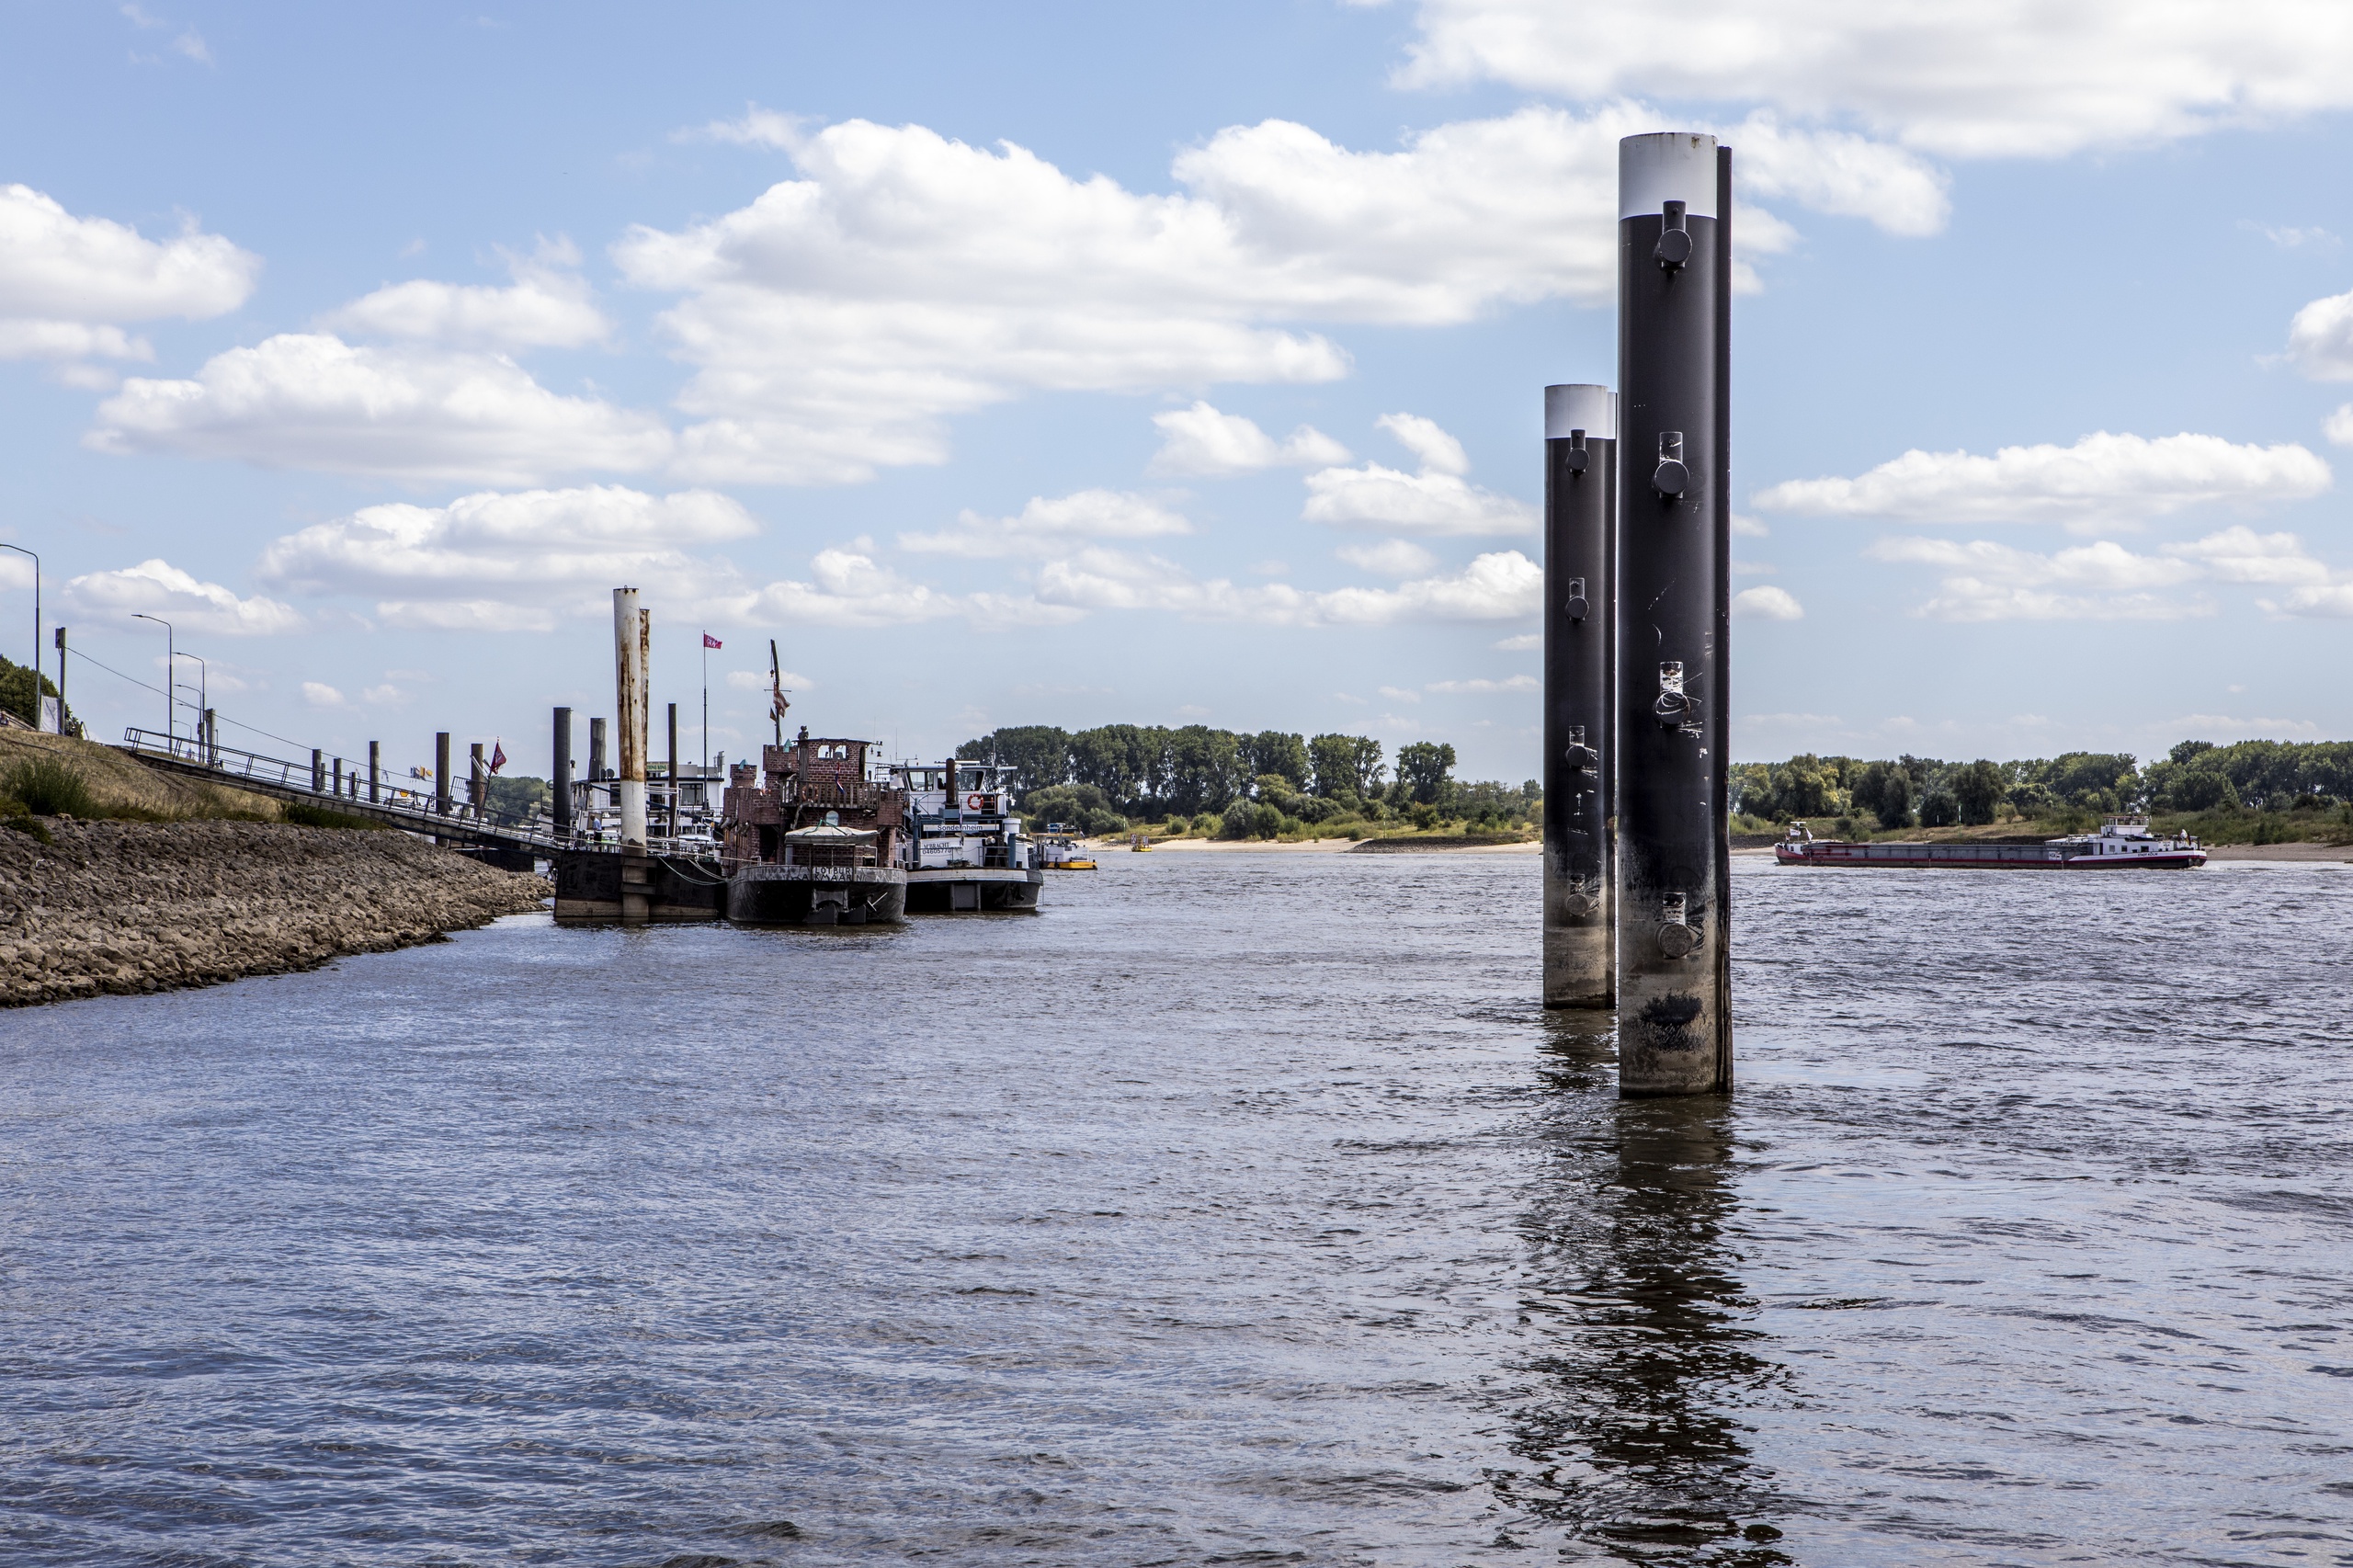 Het water in rivier de Rijn staat extreem laag door aanhoudende droogte. Er is een officieel watertekort in Nederland.